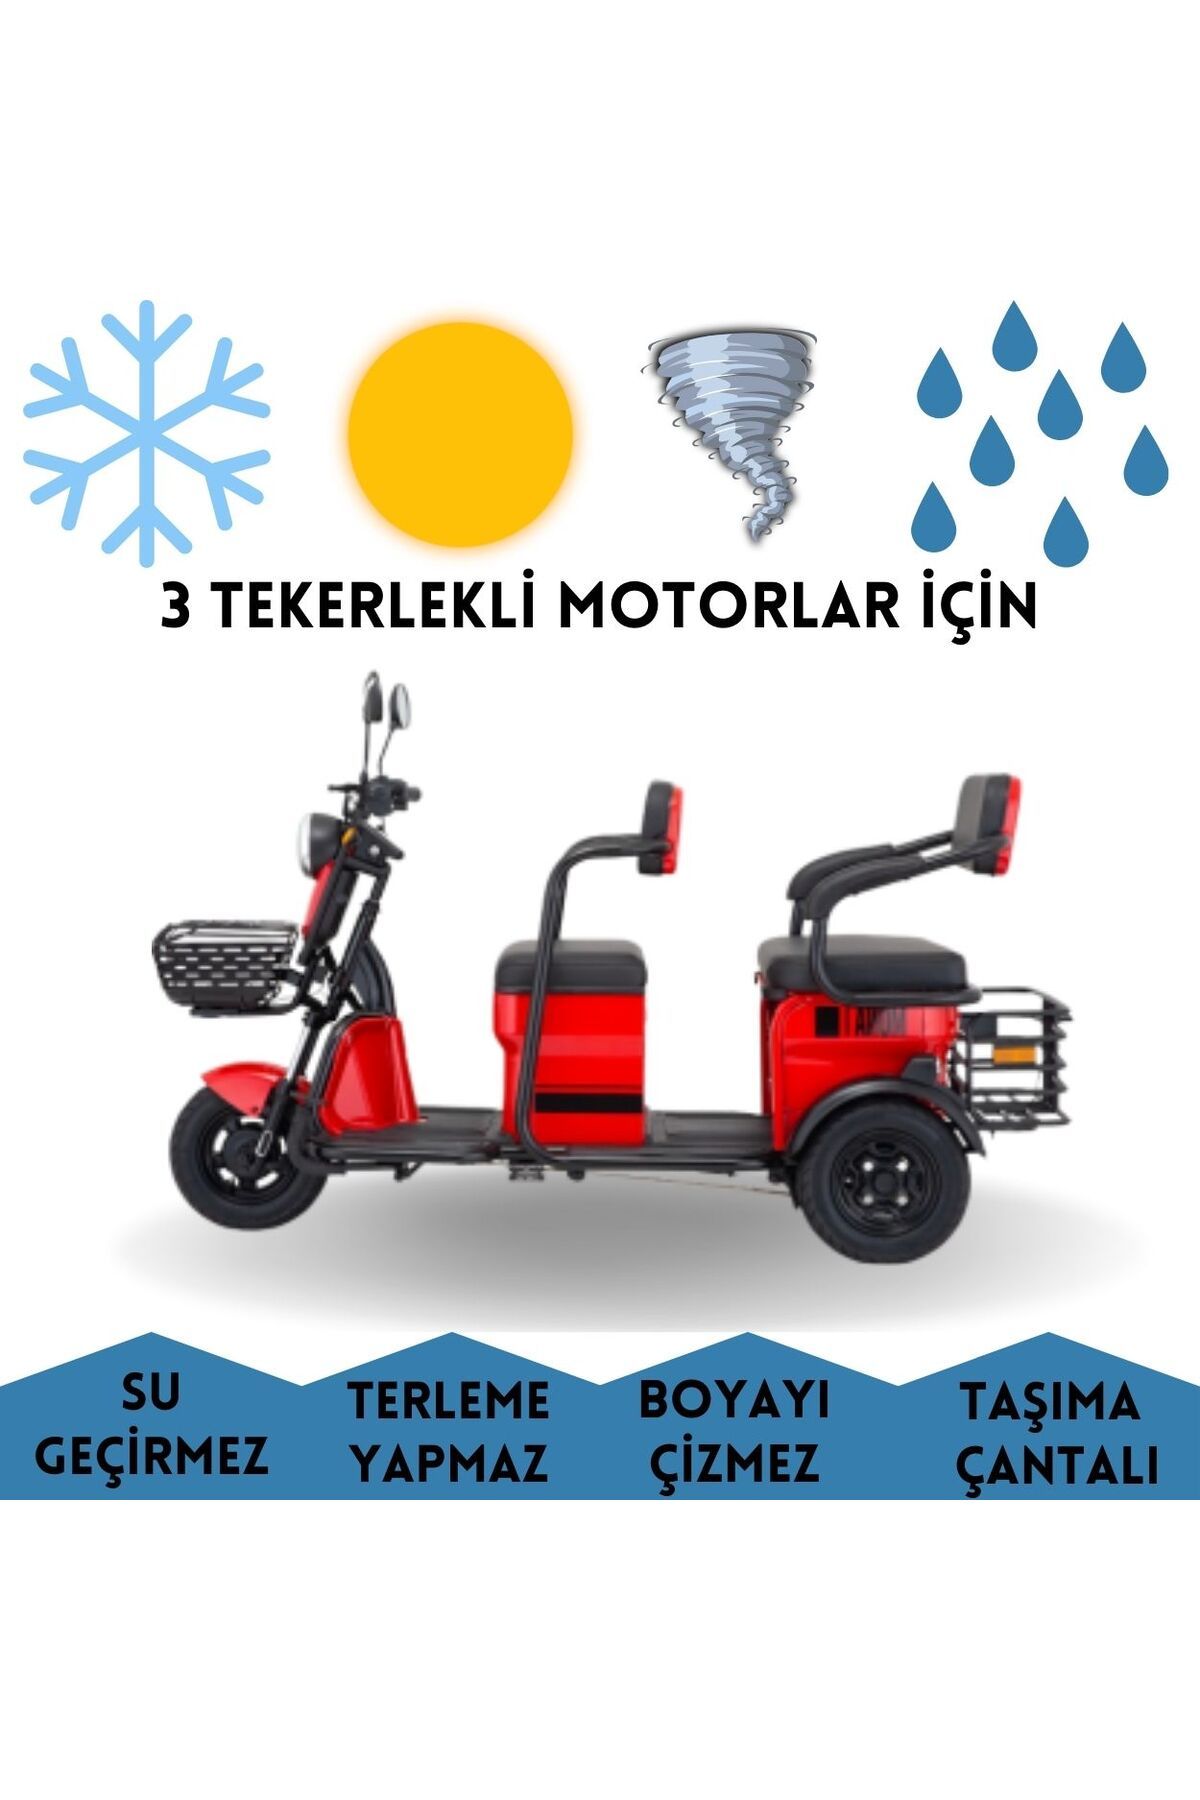 MaxDurable Kral Motor KR47 Mako Elektrikli Engelli Aracı Motor Brandası Su Geçirmez Motosiklet Örtüsü